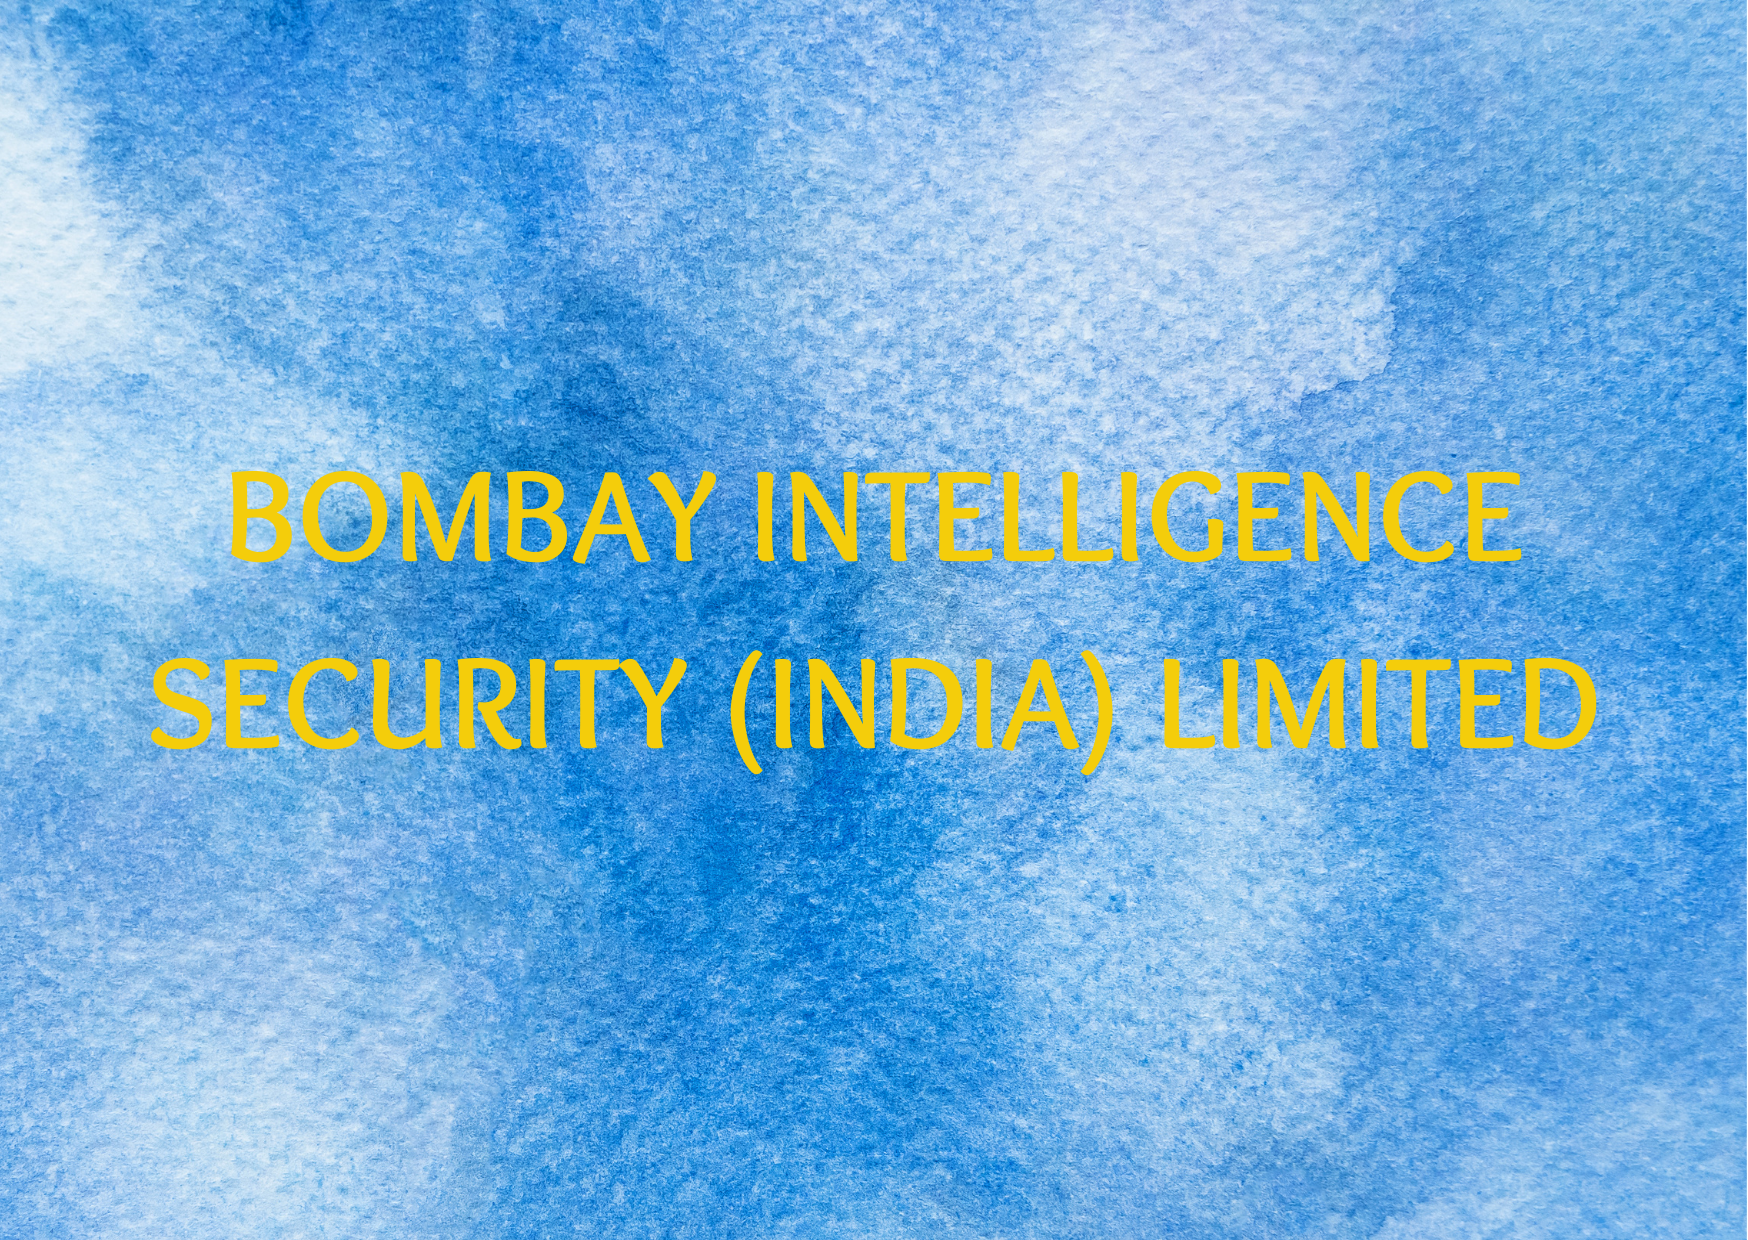 Bombay Intelligence Security (India) Limited 